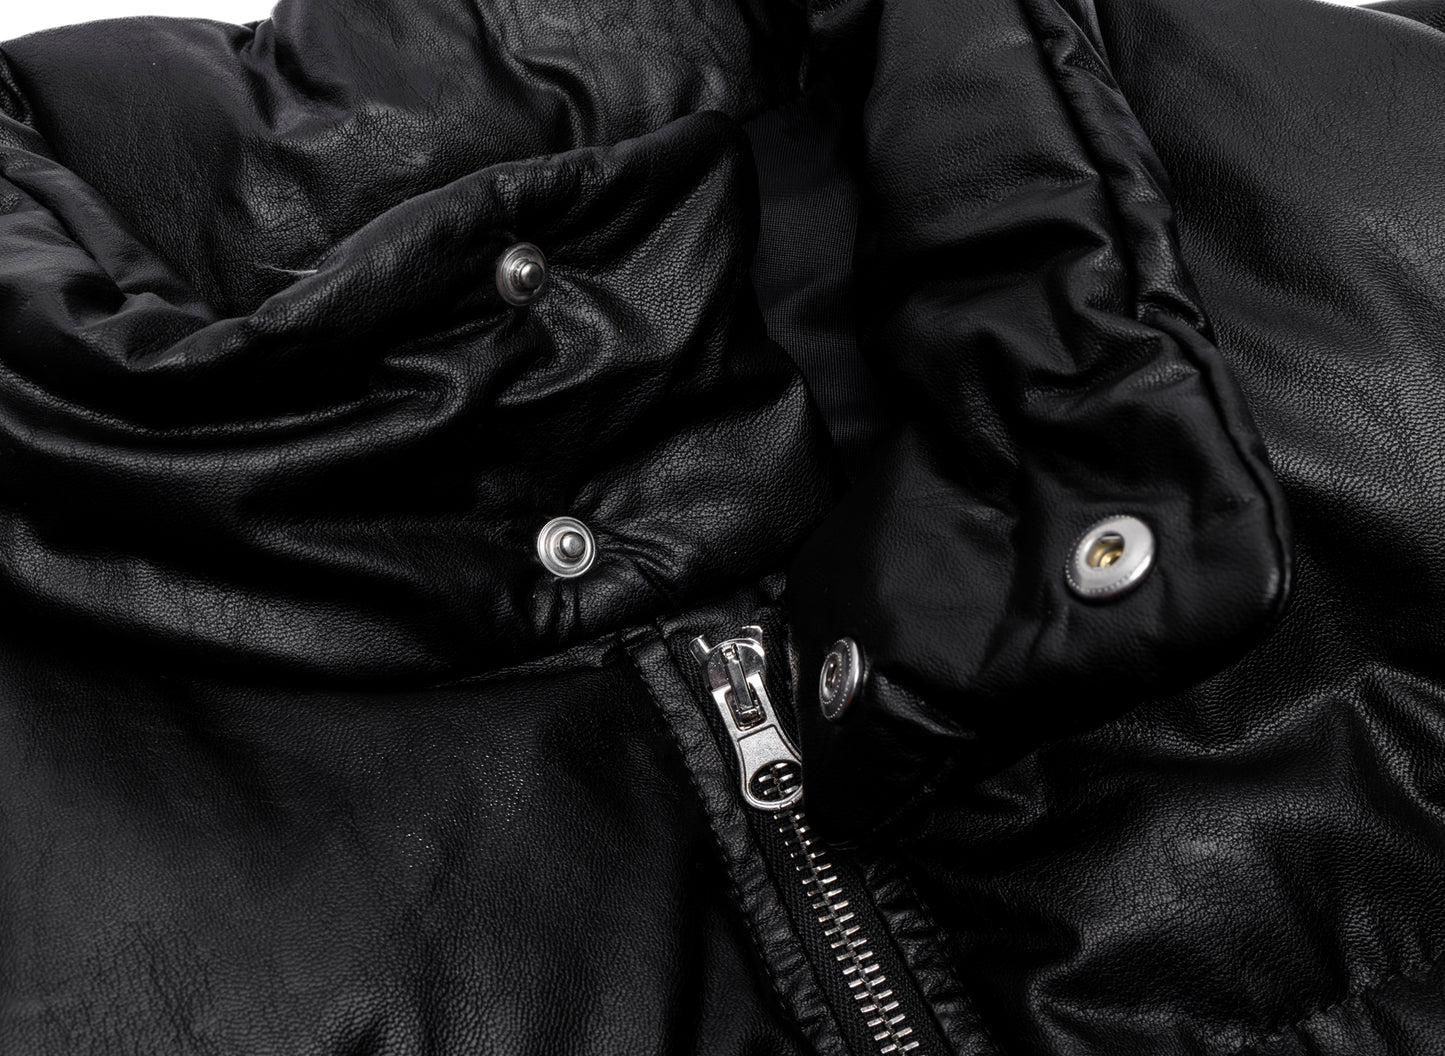 Maison Margiela MM6 Leather Zip Puffer Jacket